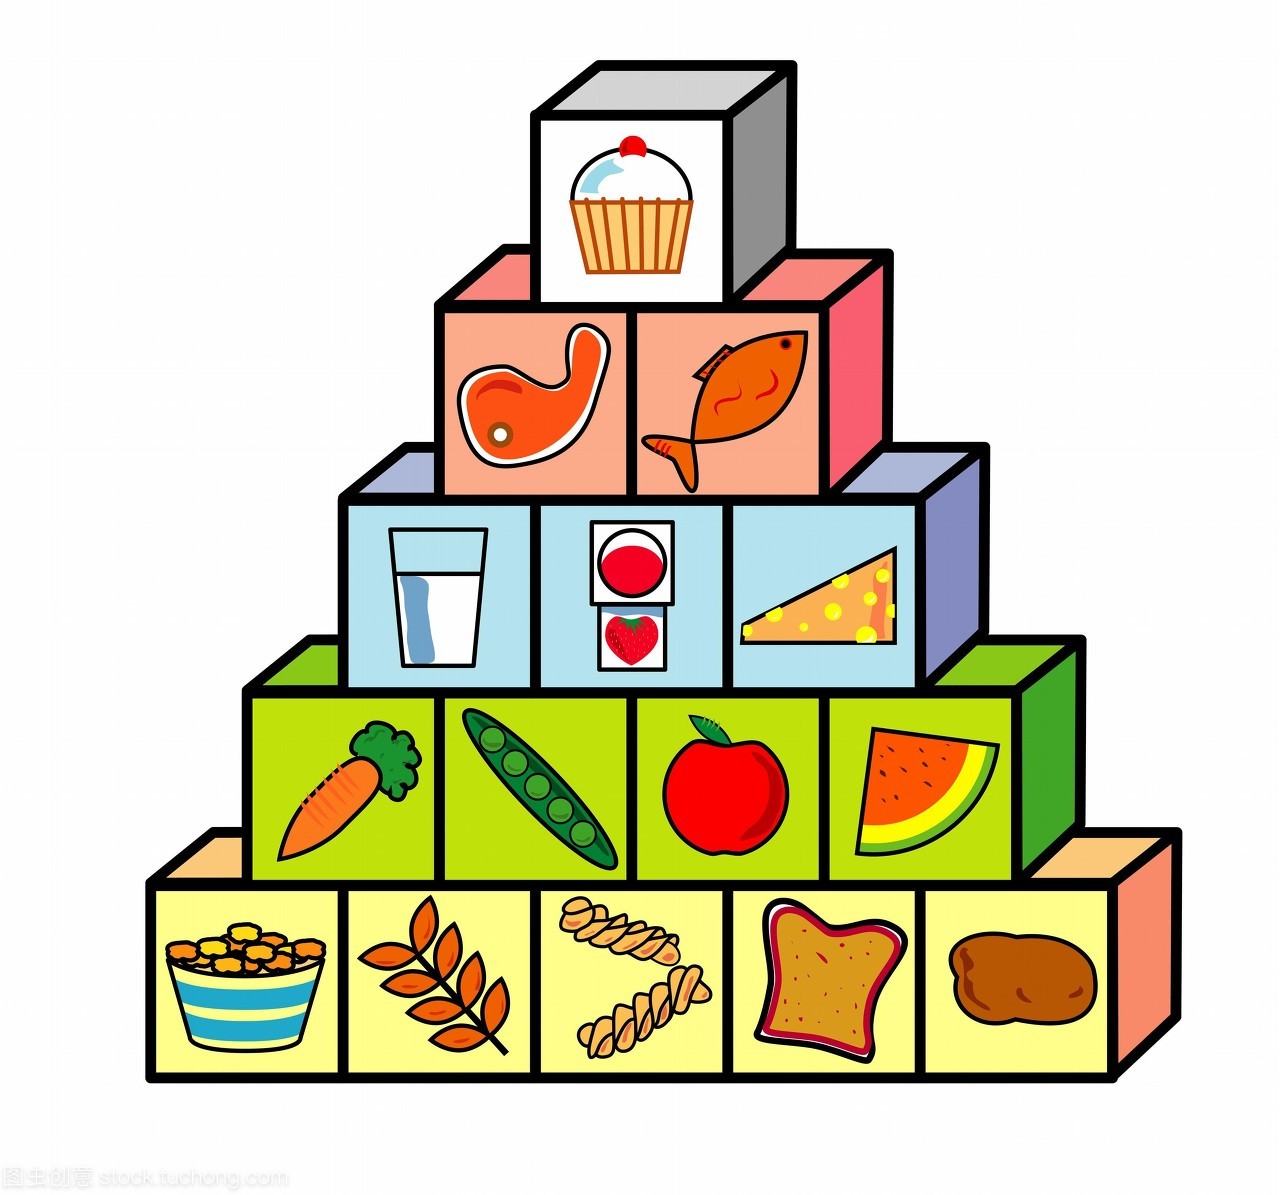 食物金字塔。食物金字塔电脑绘图显示一个均衡的饮食。金字塔显示了比例的饮食应该由每个主要的食物组。底部是碳水化合物占最大的饮食的一部分。下一个是水果和蔬菜其次是乳制品和蛋白质。顶部是脂肪和糖应该健康饮食的最小组成部分。